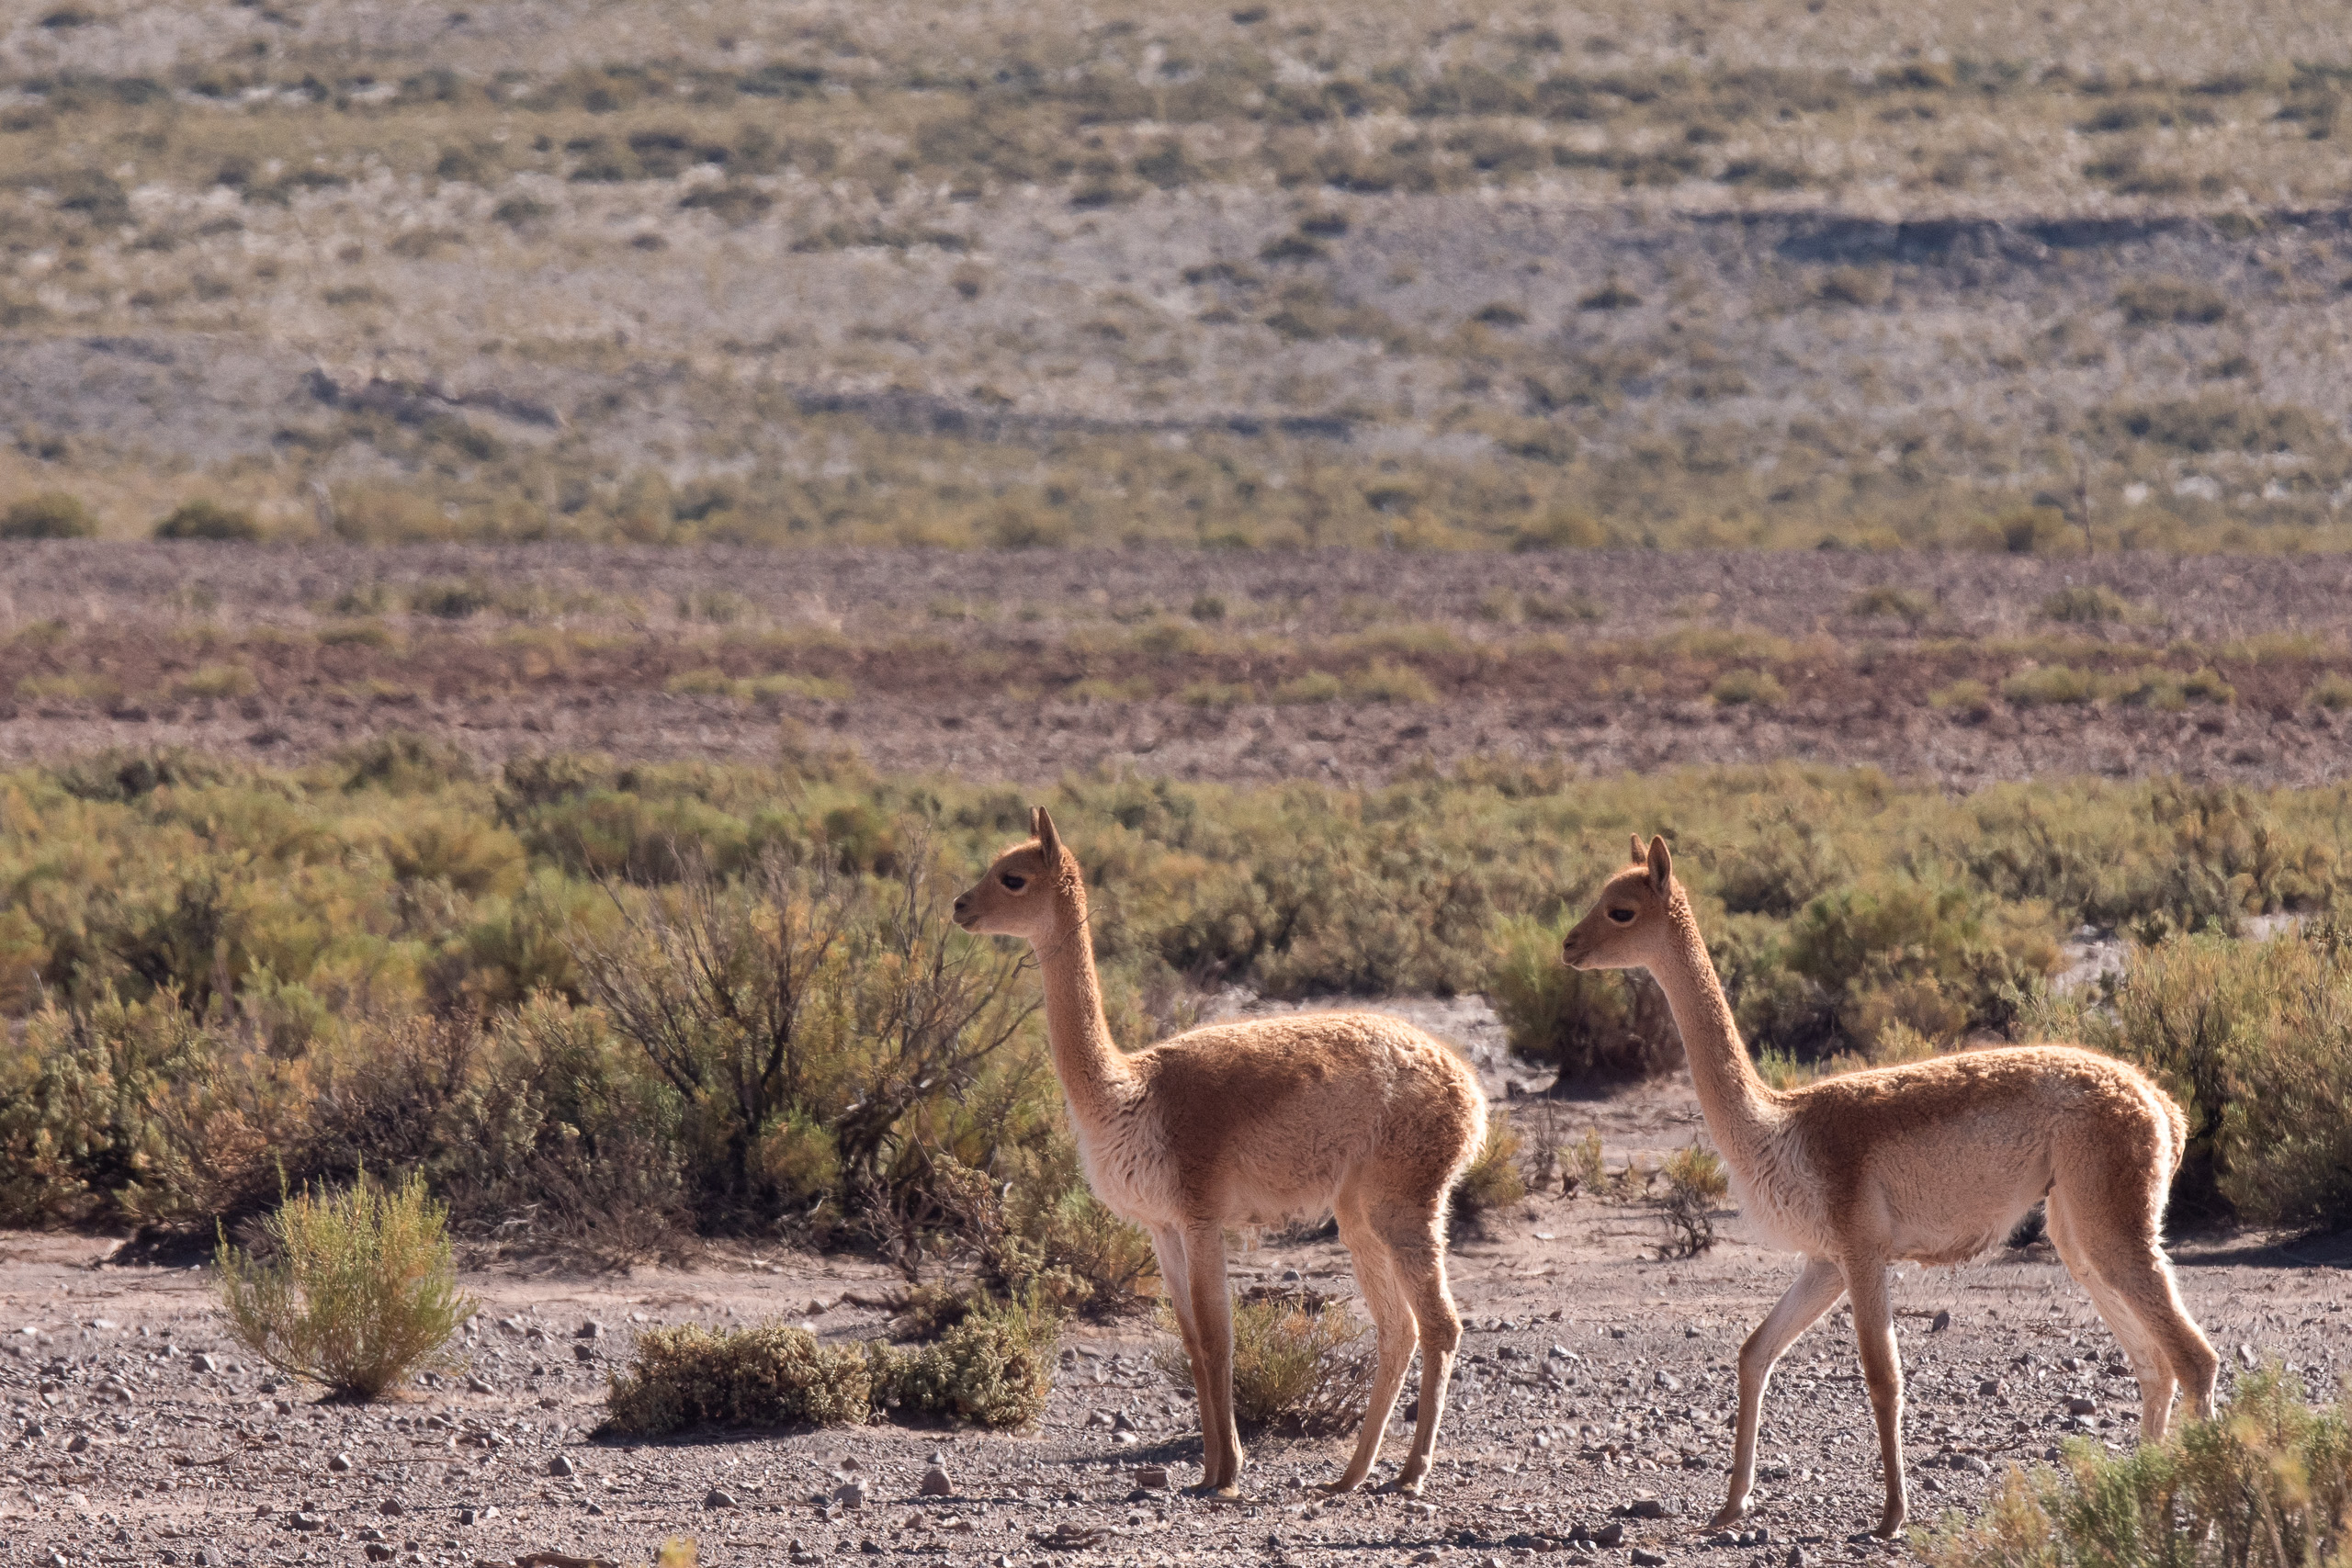 dos vicuñas al aire libre en una zona de vegetación seca